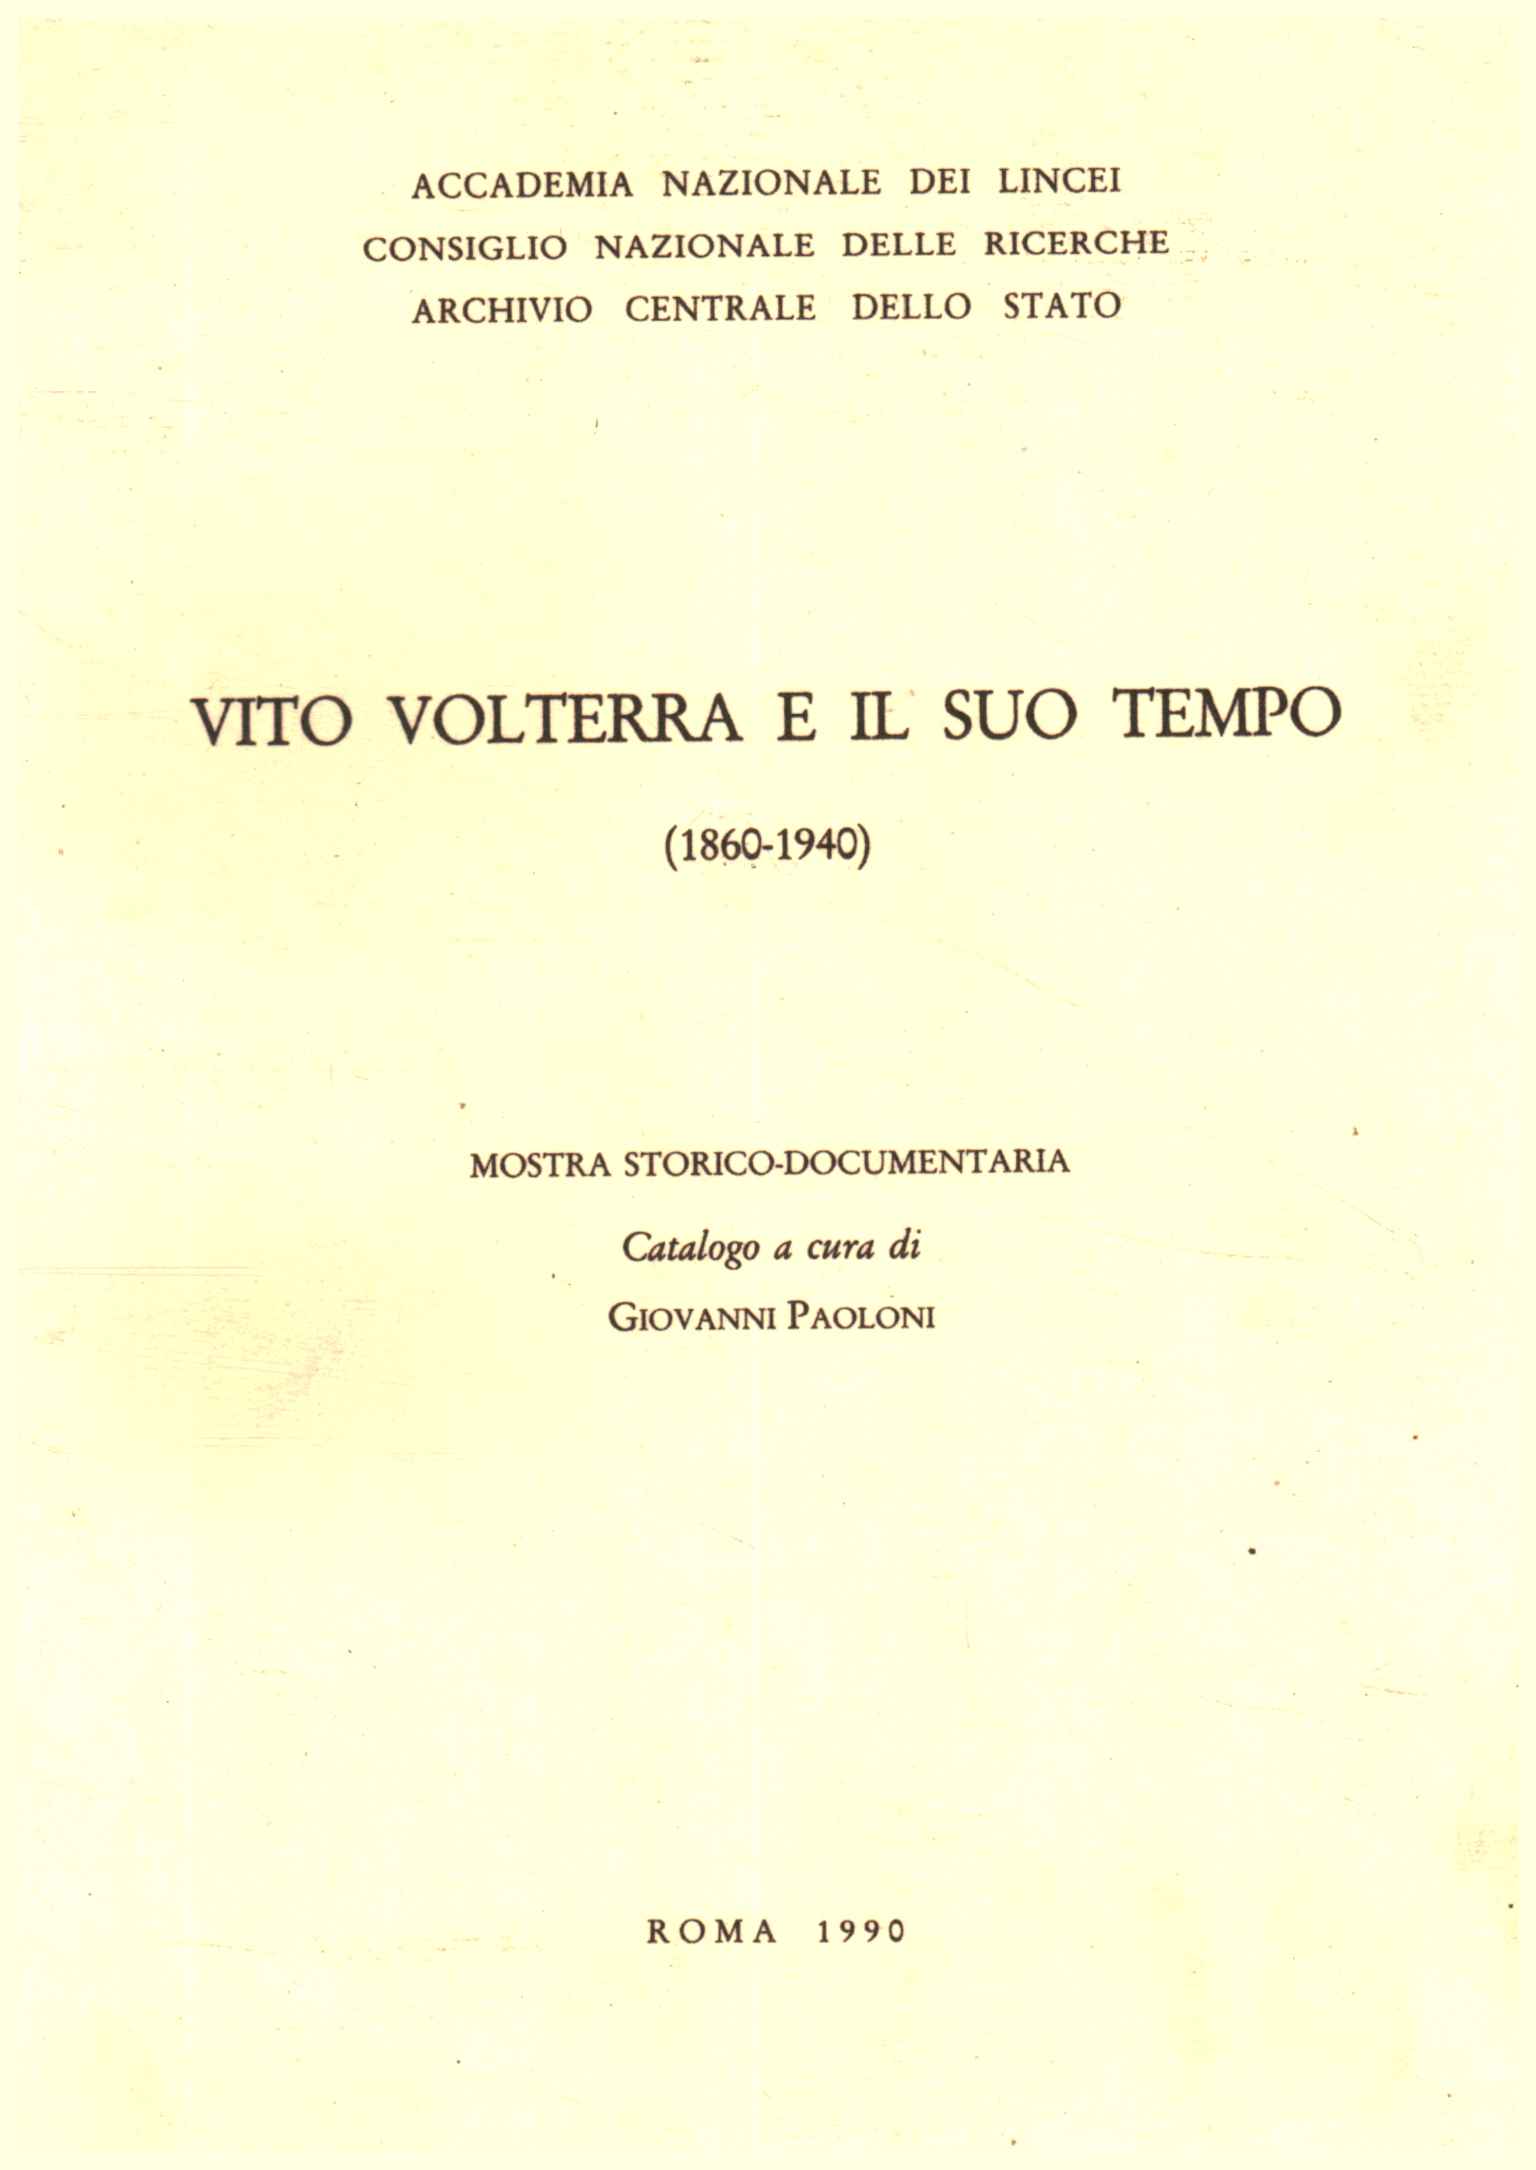 Vito Volterra und seine Zeit (1860-194